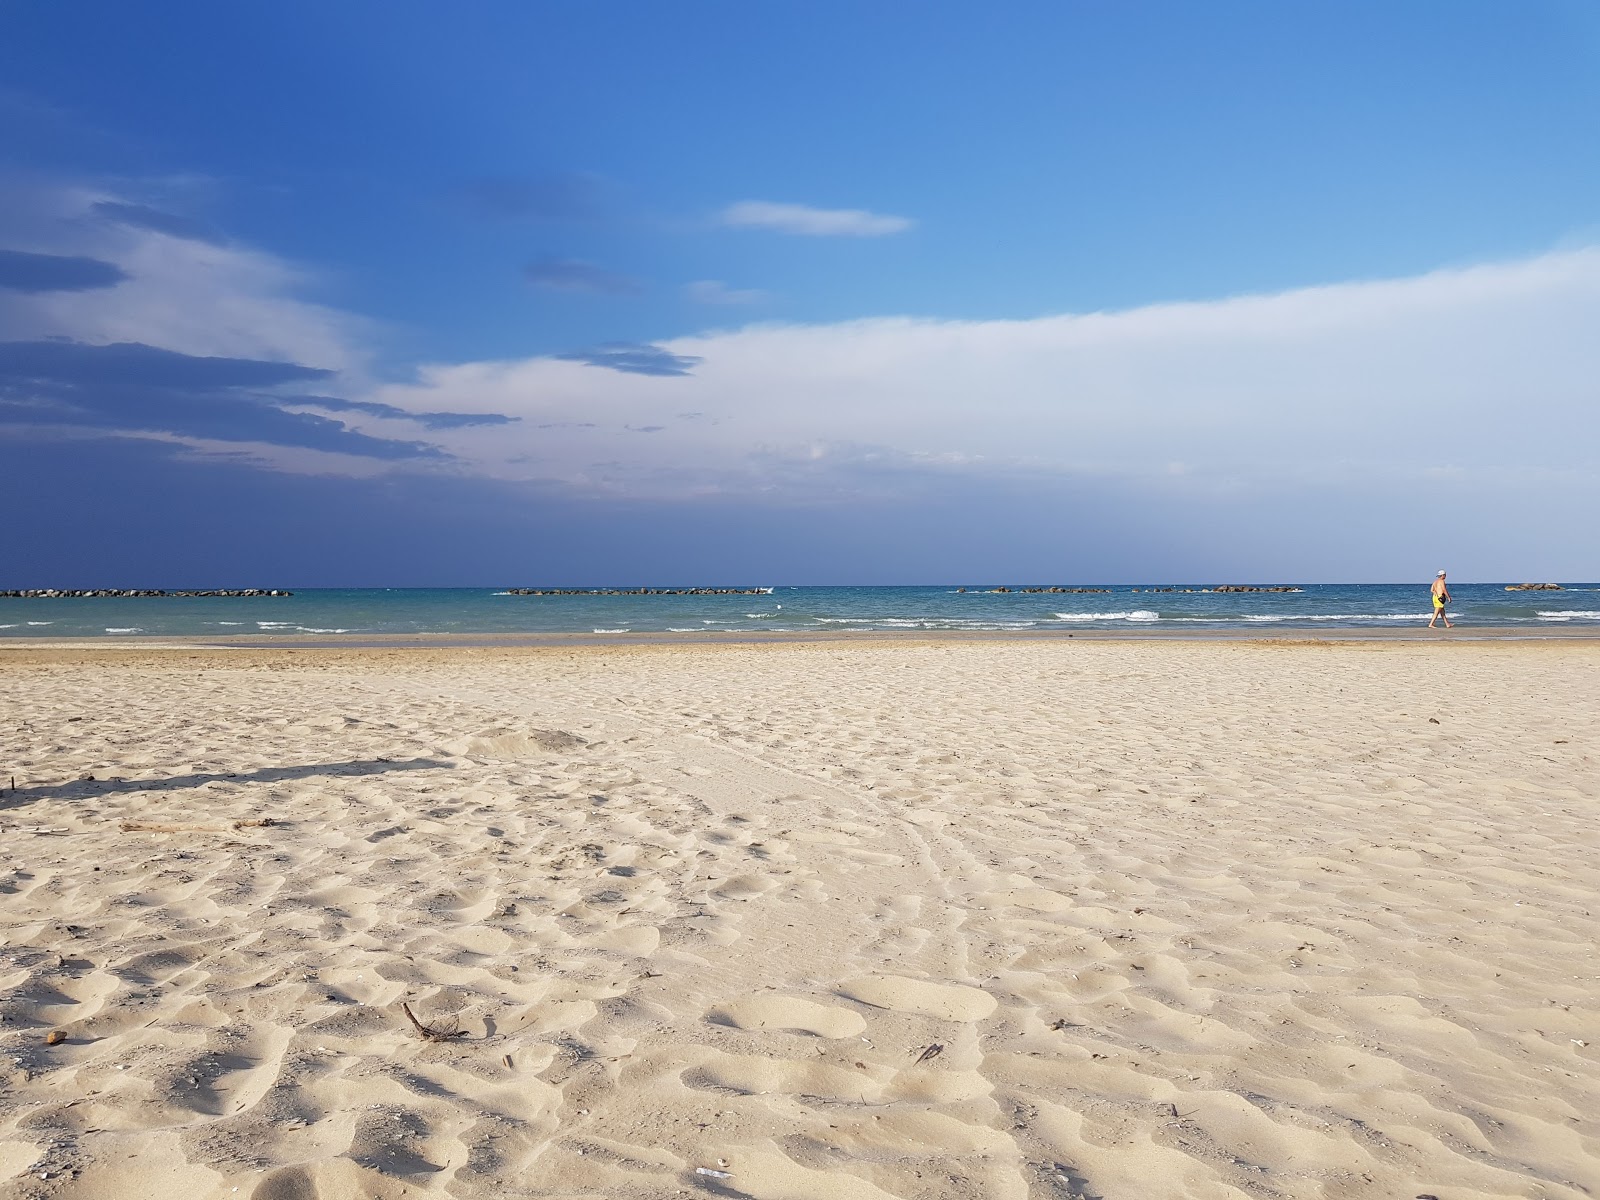 Foto af Senigallia beach - populært sted blandt afslapningskendere